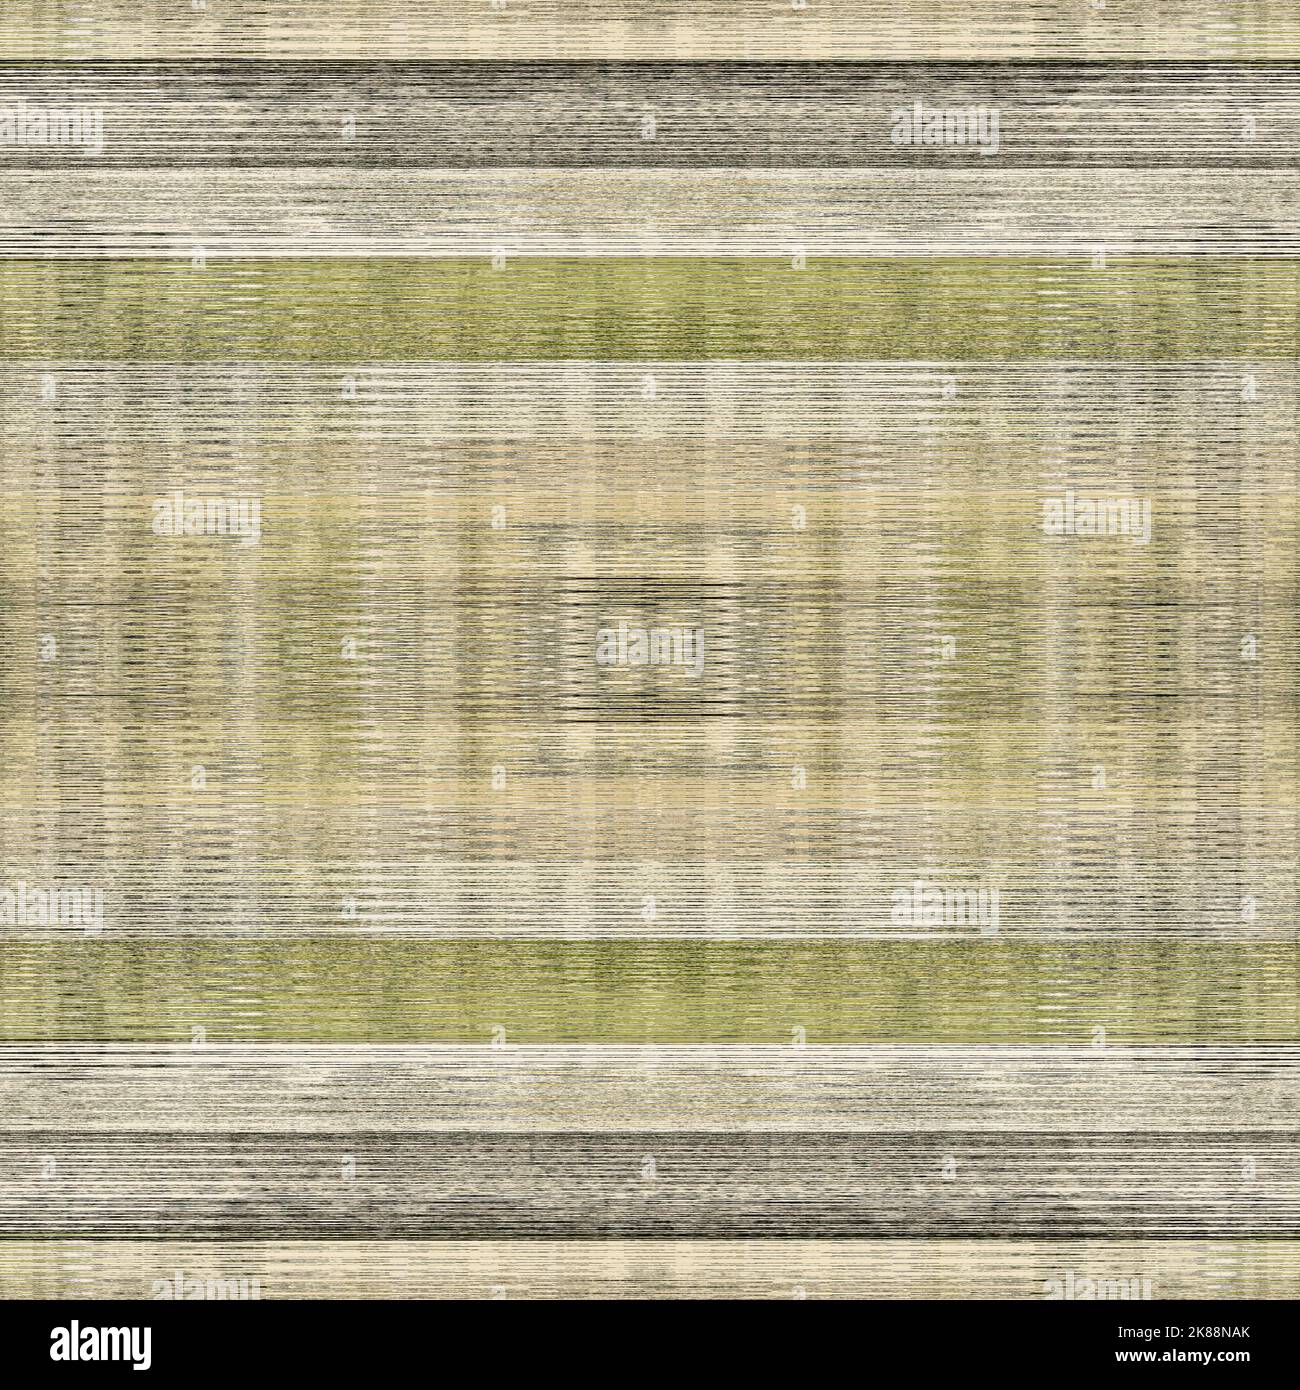 https://c8.alamy.com/comp/2K88NAK/green-forest-marl-seamless-pattern-textured-woodland-weave-for-irregular-melange-background-all-over-cosy-vintage-cotton-wool-blend-2K88NAK.jpg